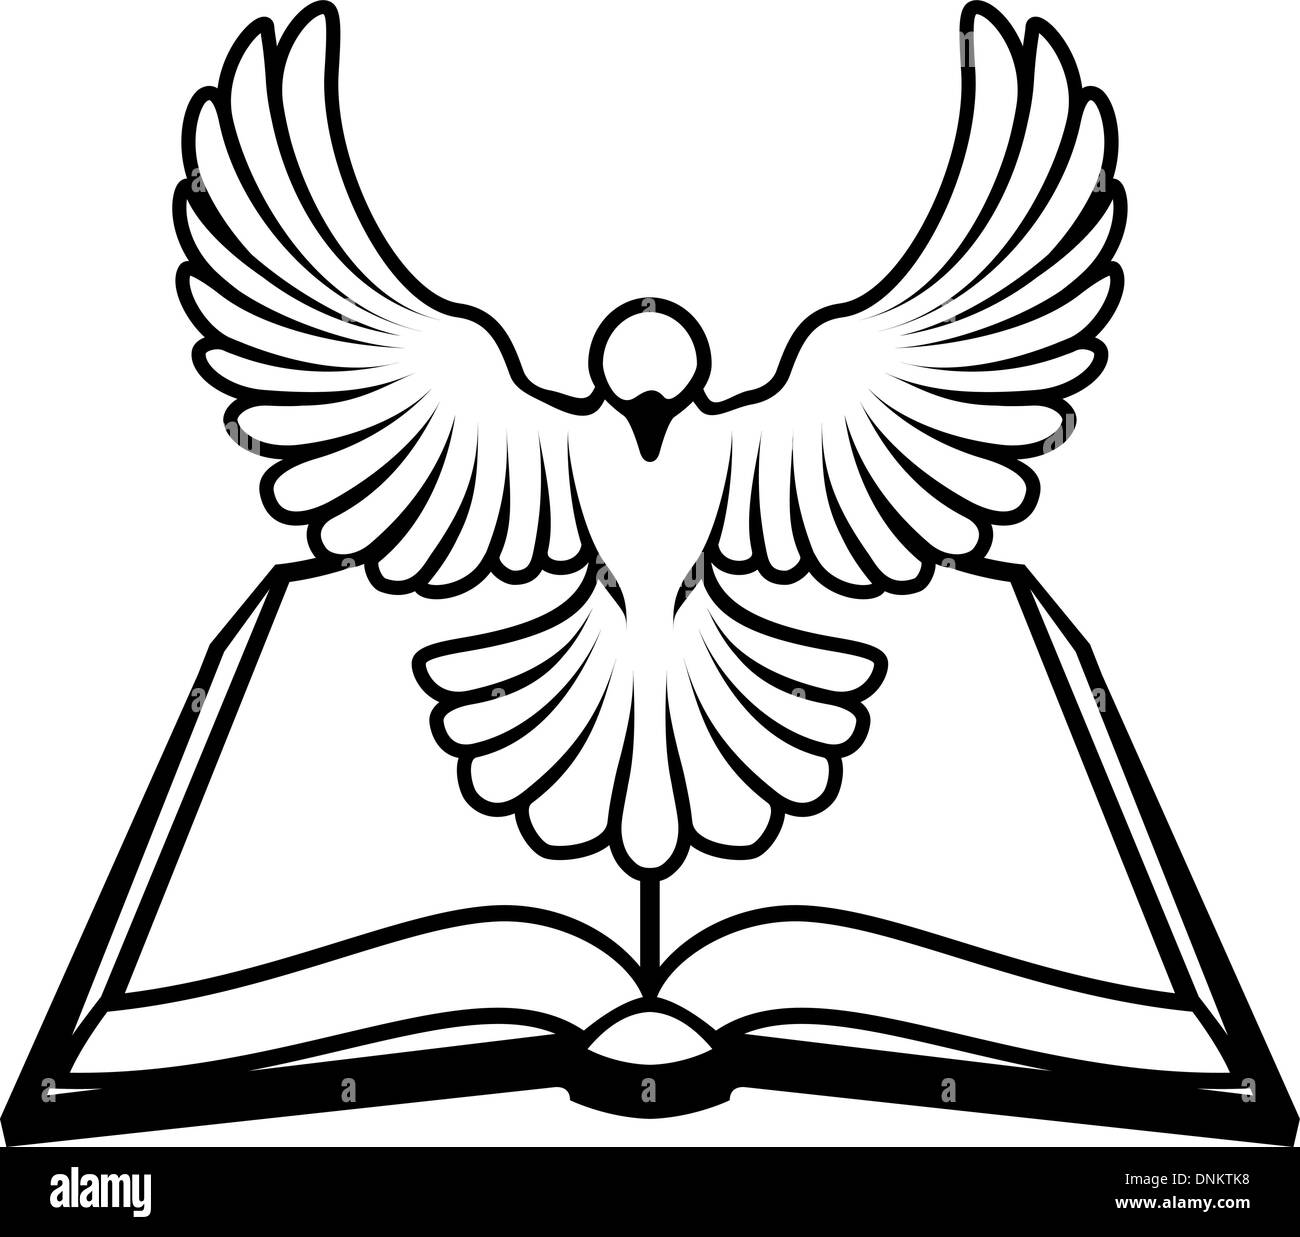 Una Bibbia Cristiana colomba concetto, con una colomba bianca che rappresenta lo spirito santo battenti fuori della bibbia. Potrebbe fare riferimento a inerrant Illustrazione Vettoriale